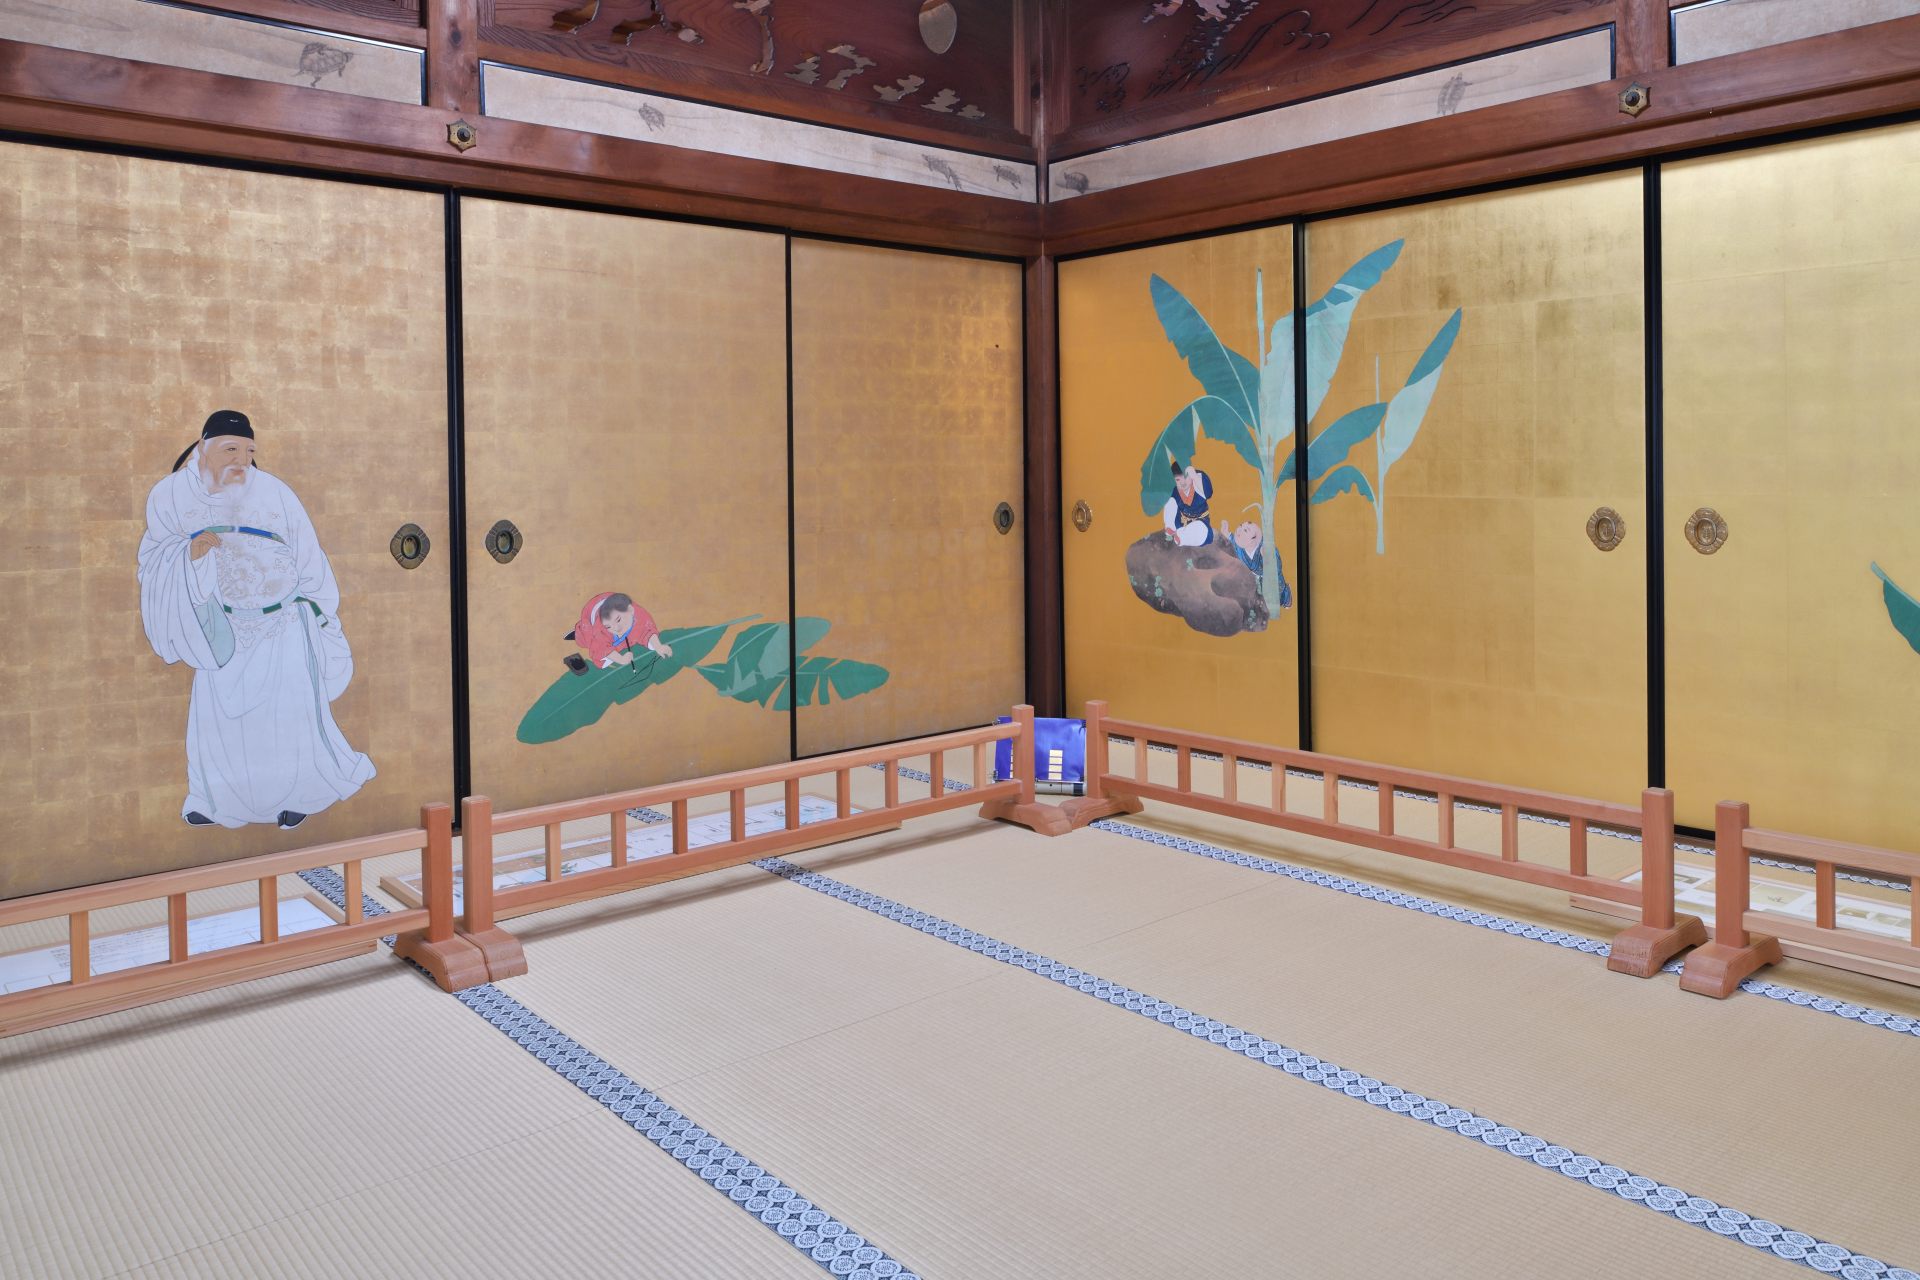 円山応挙による襖絵などが残る、「応挙寺」とも呼ばれる大乗寺。